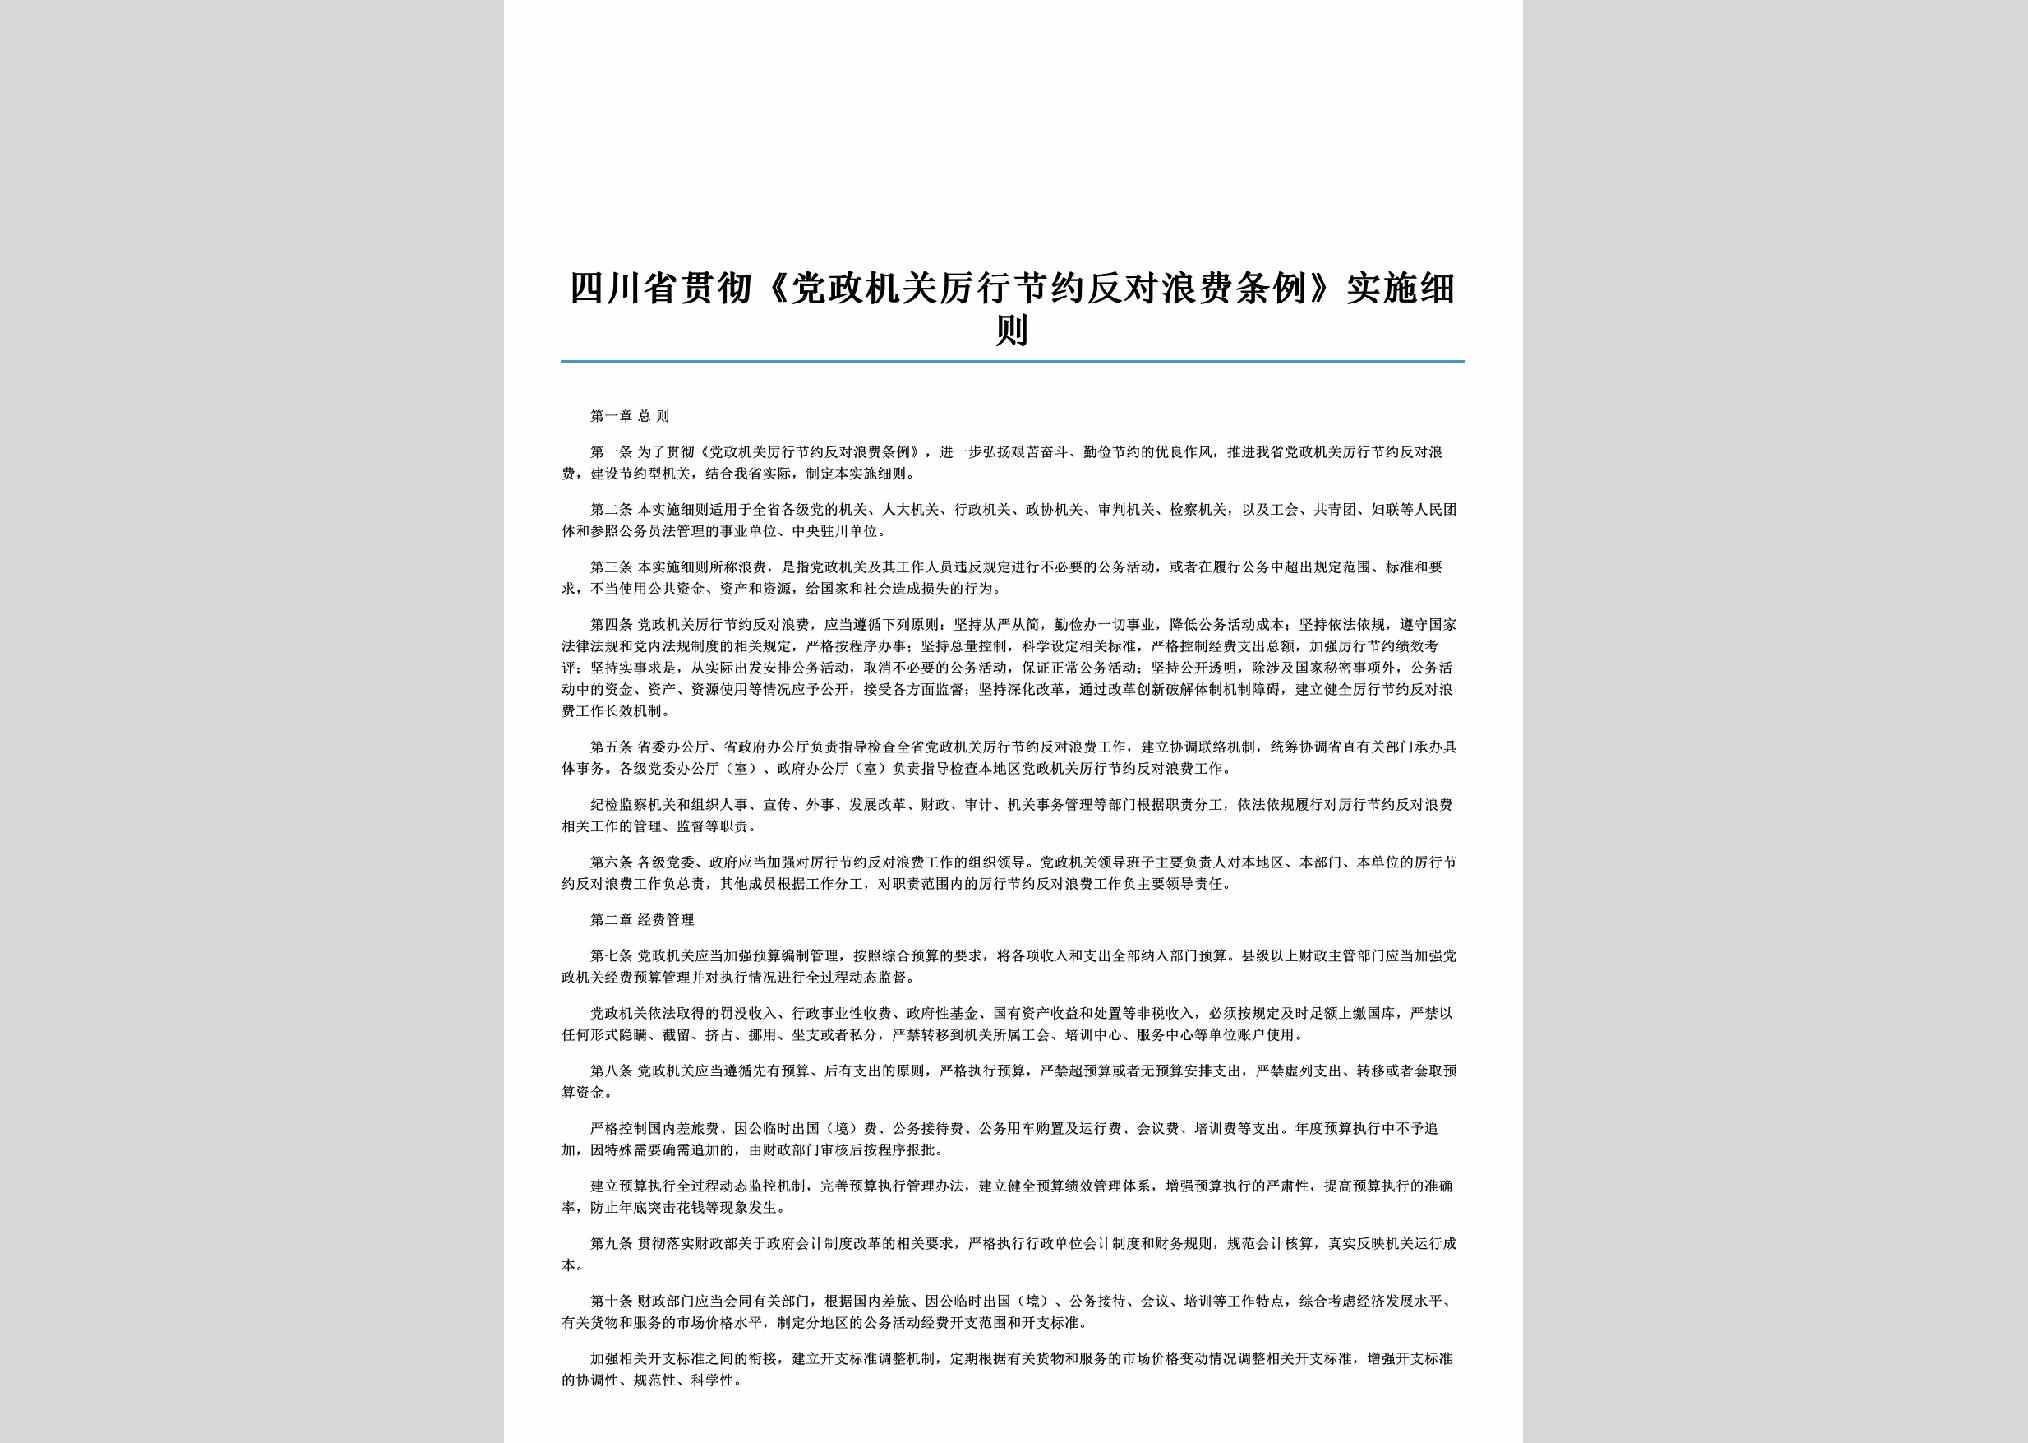 SC-FDLFTLXZ-2014：四川省贯彻《党政机关厉行节约反对浪费条例》实施细则